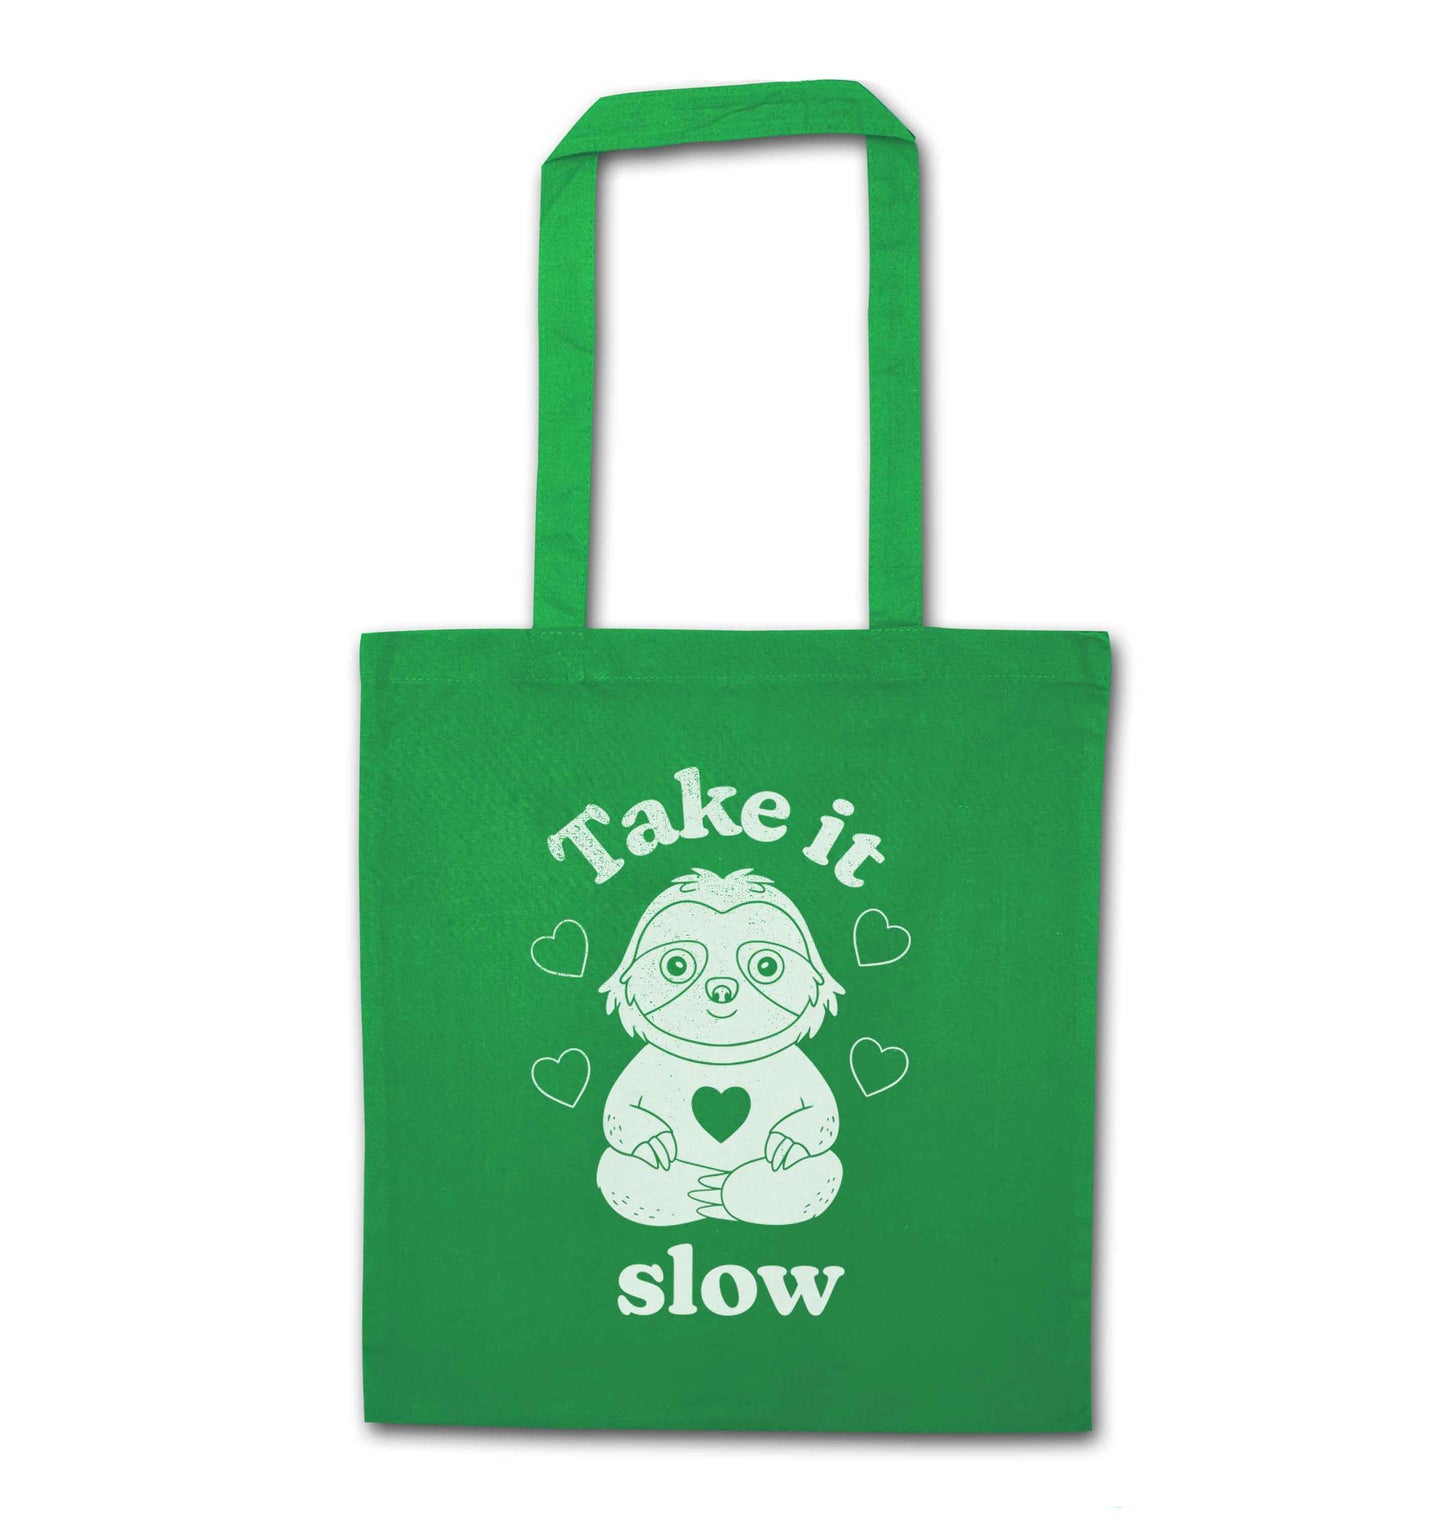 Take it slow green tote bag